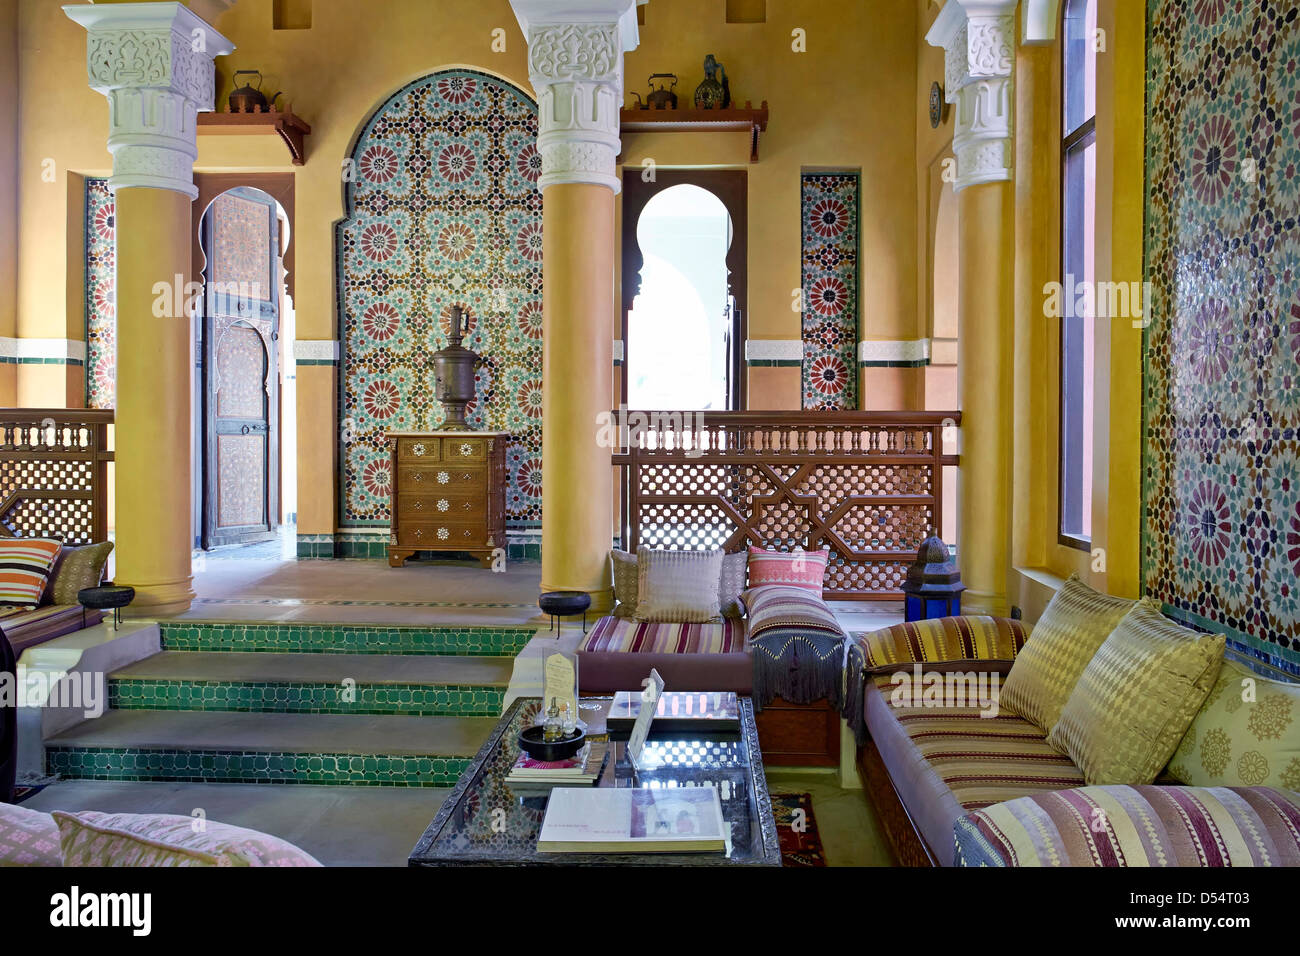 Accueil marocain avec l'intérieur d'un salon et d'un décor traditionnel et des meubles Banque D'Images